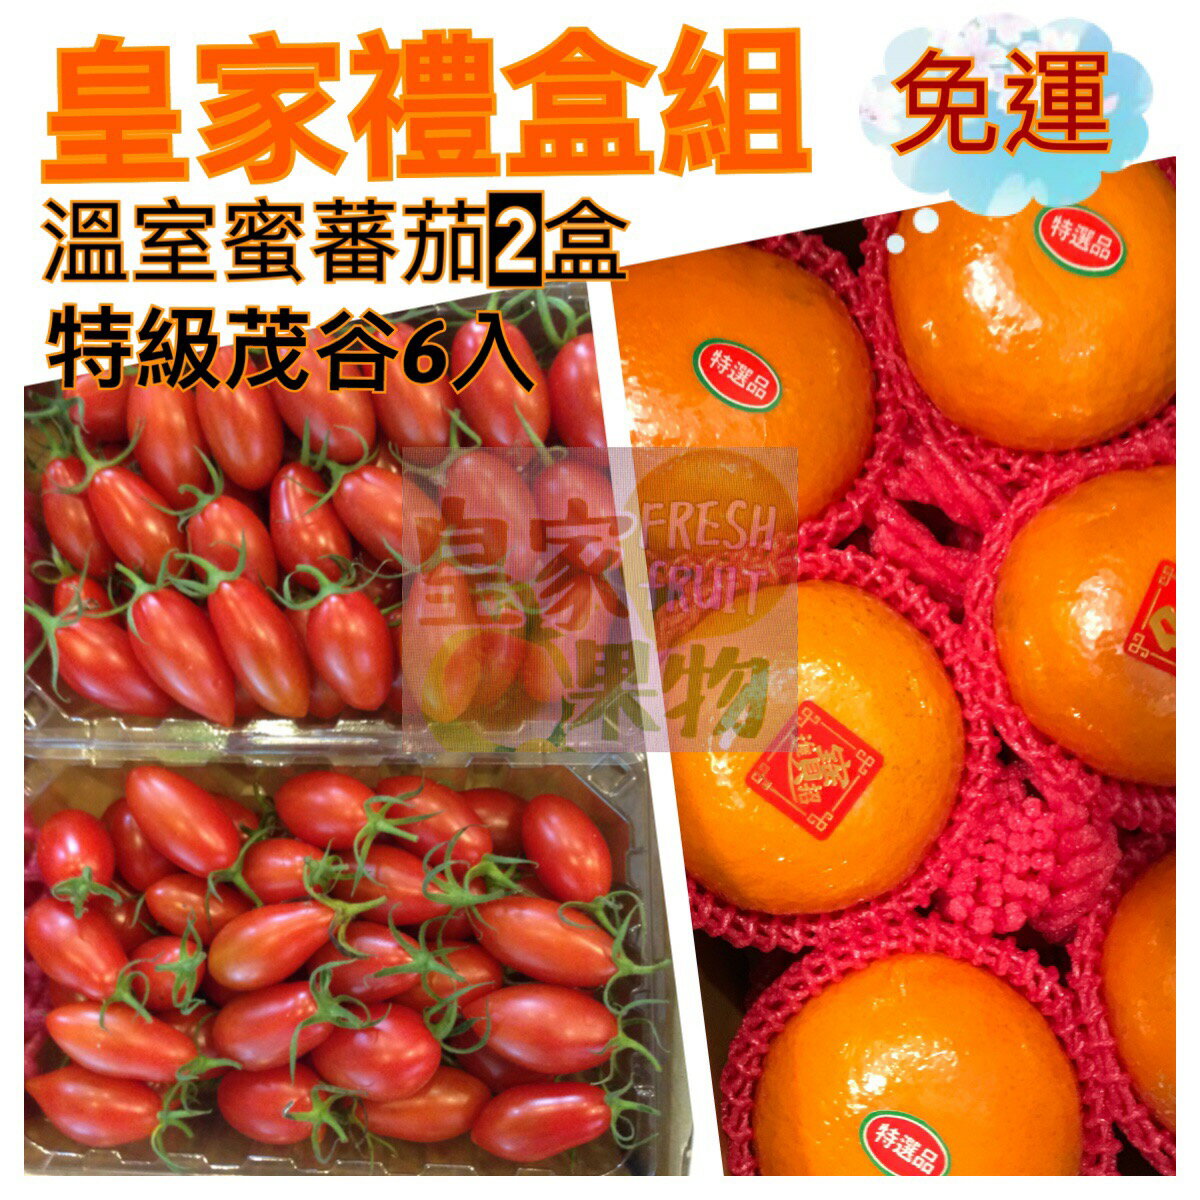 皇家幸福組(蜜番茄2盒+茂谷蜜柑6入)【皇家果物】免運